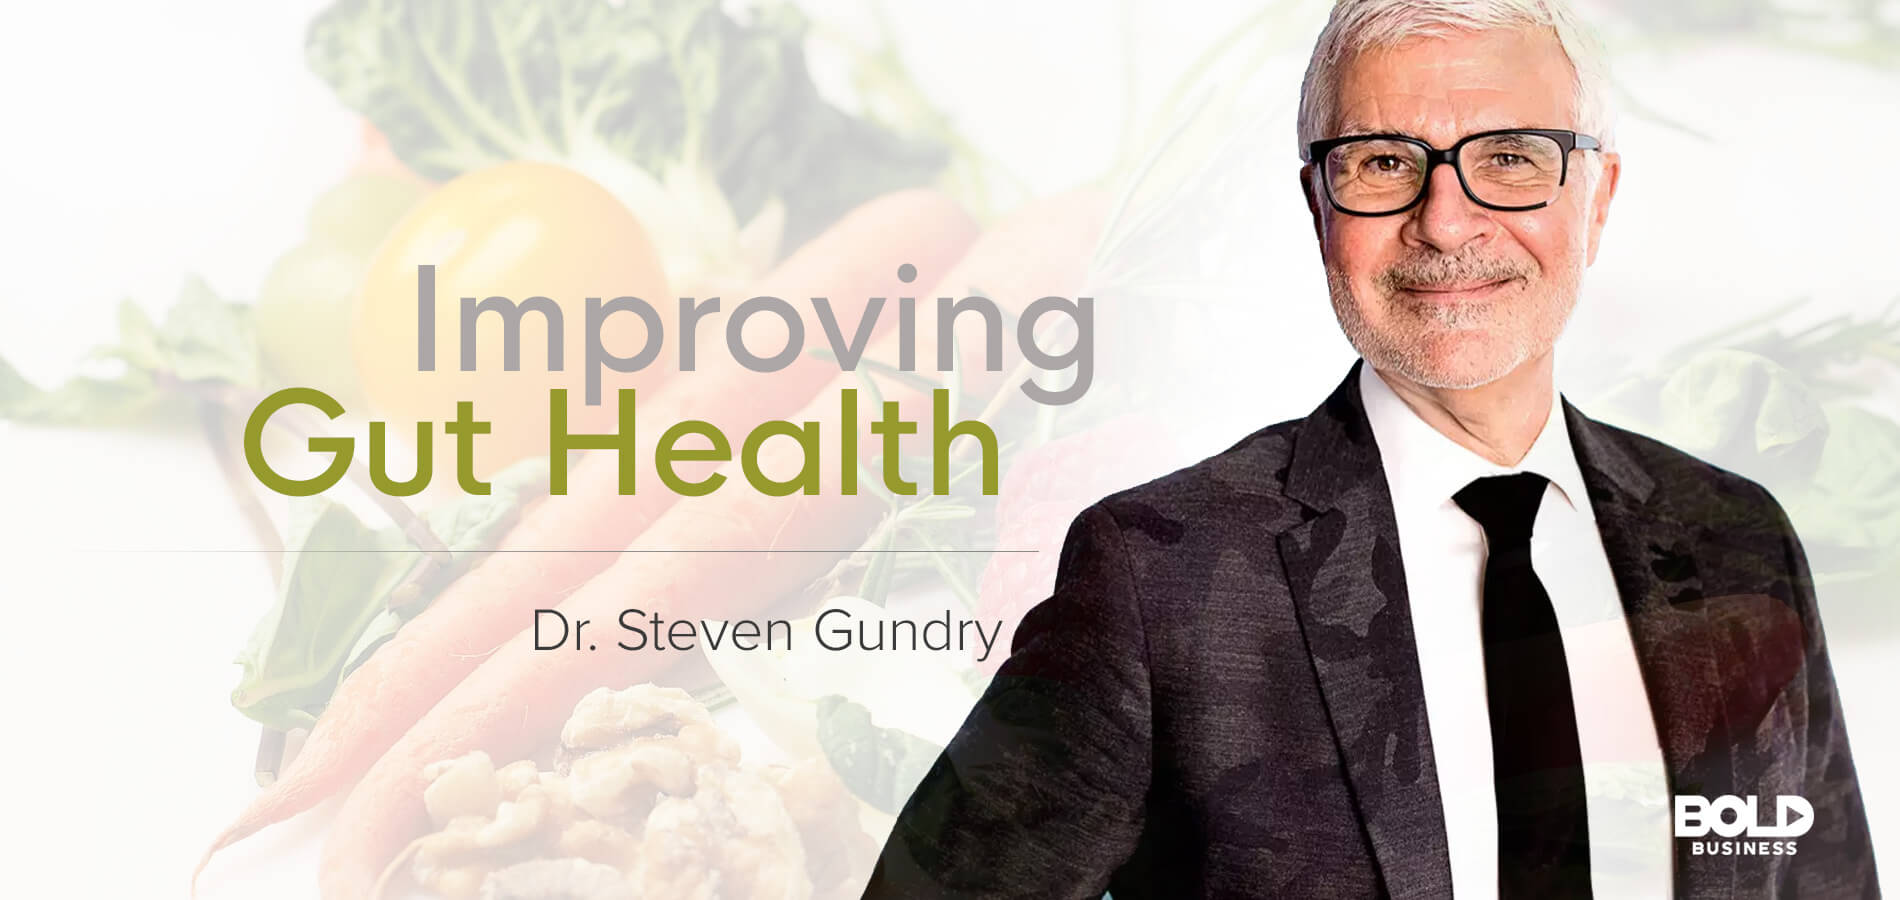 Dr. Steven Gundry is improving Gut Health